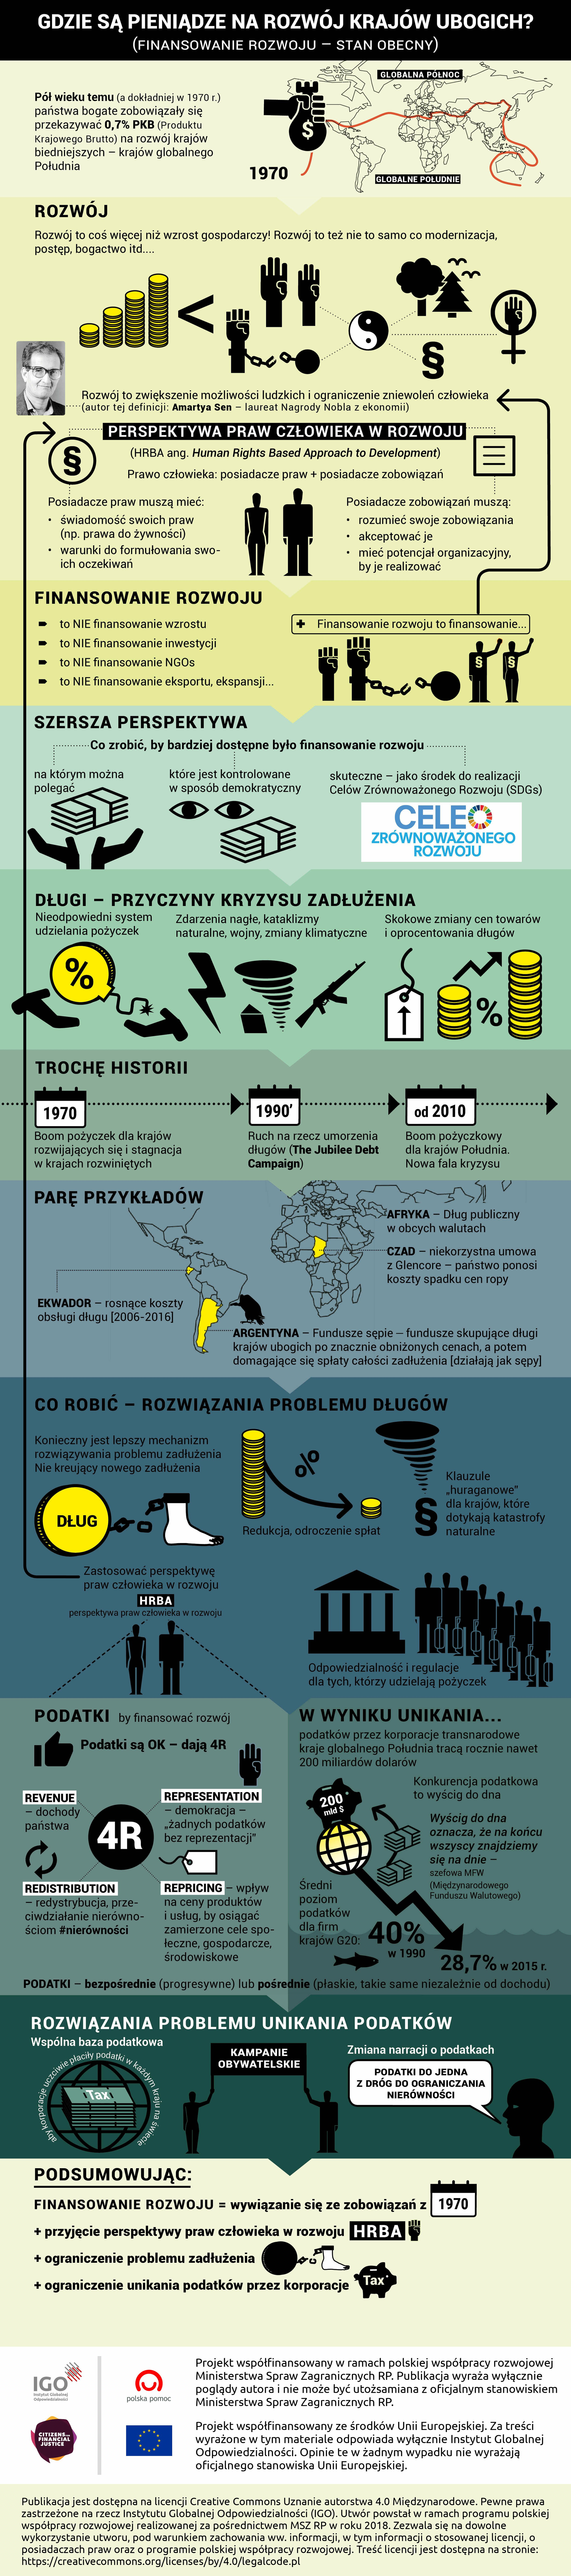 Infografika: Finansowanie rozwoju / zadłużenie